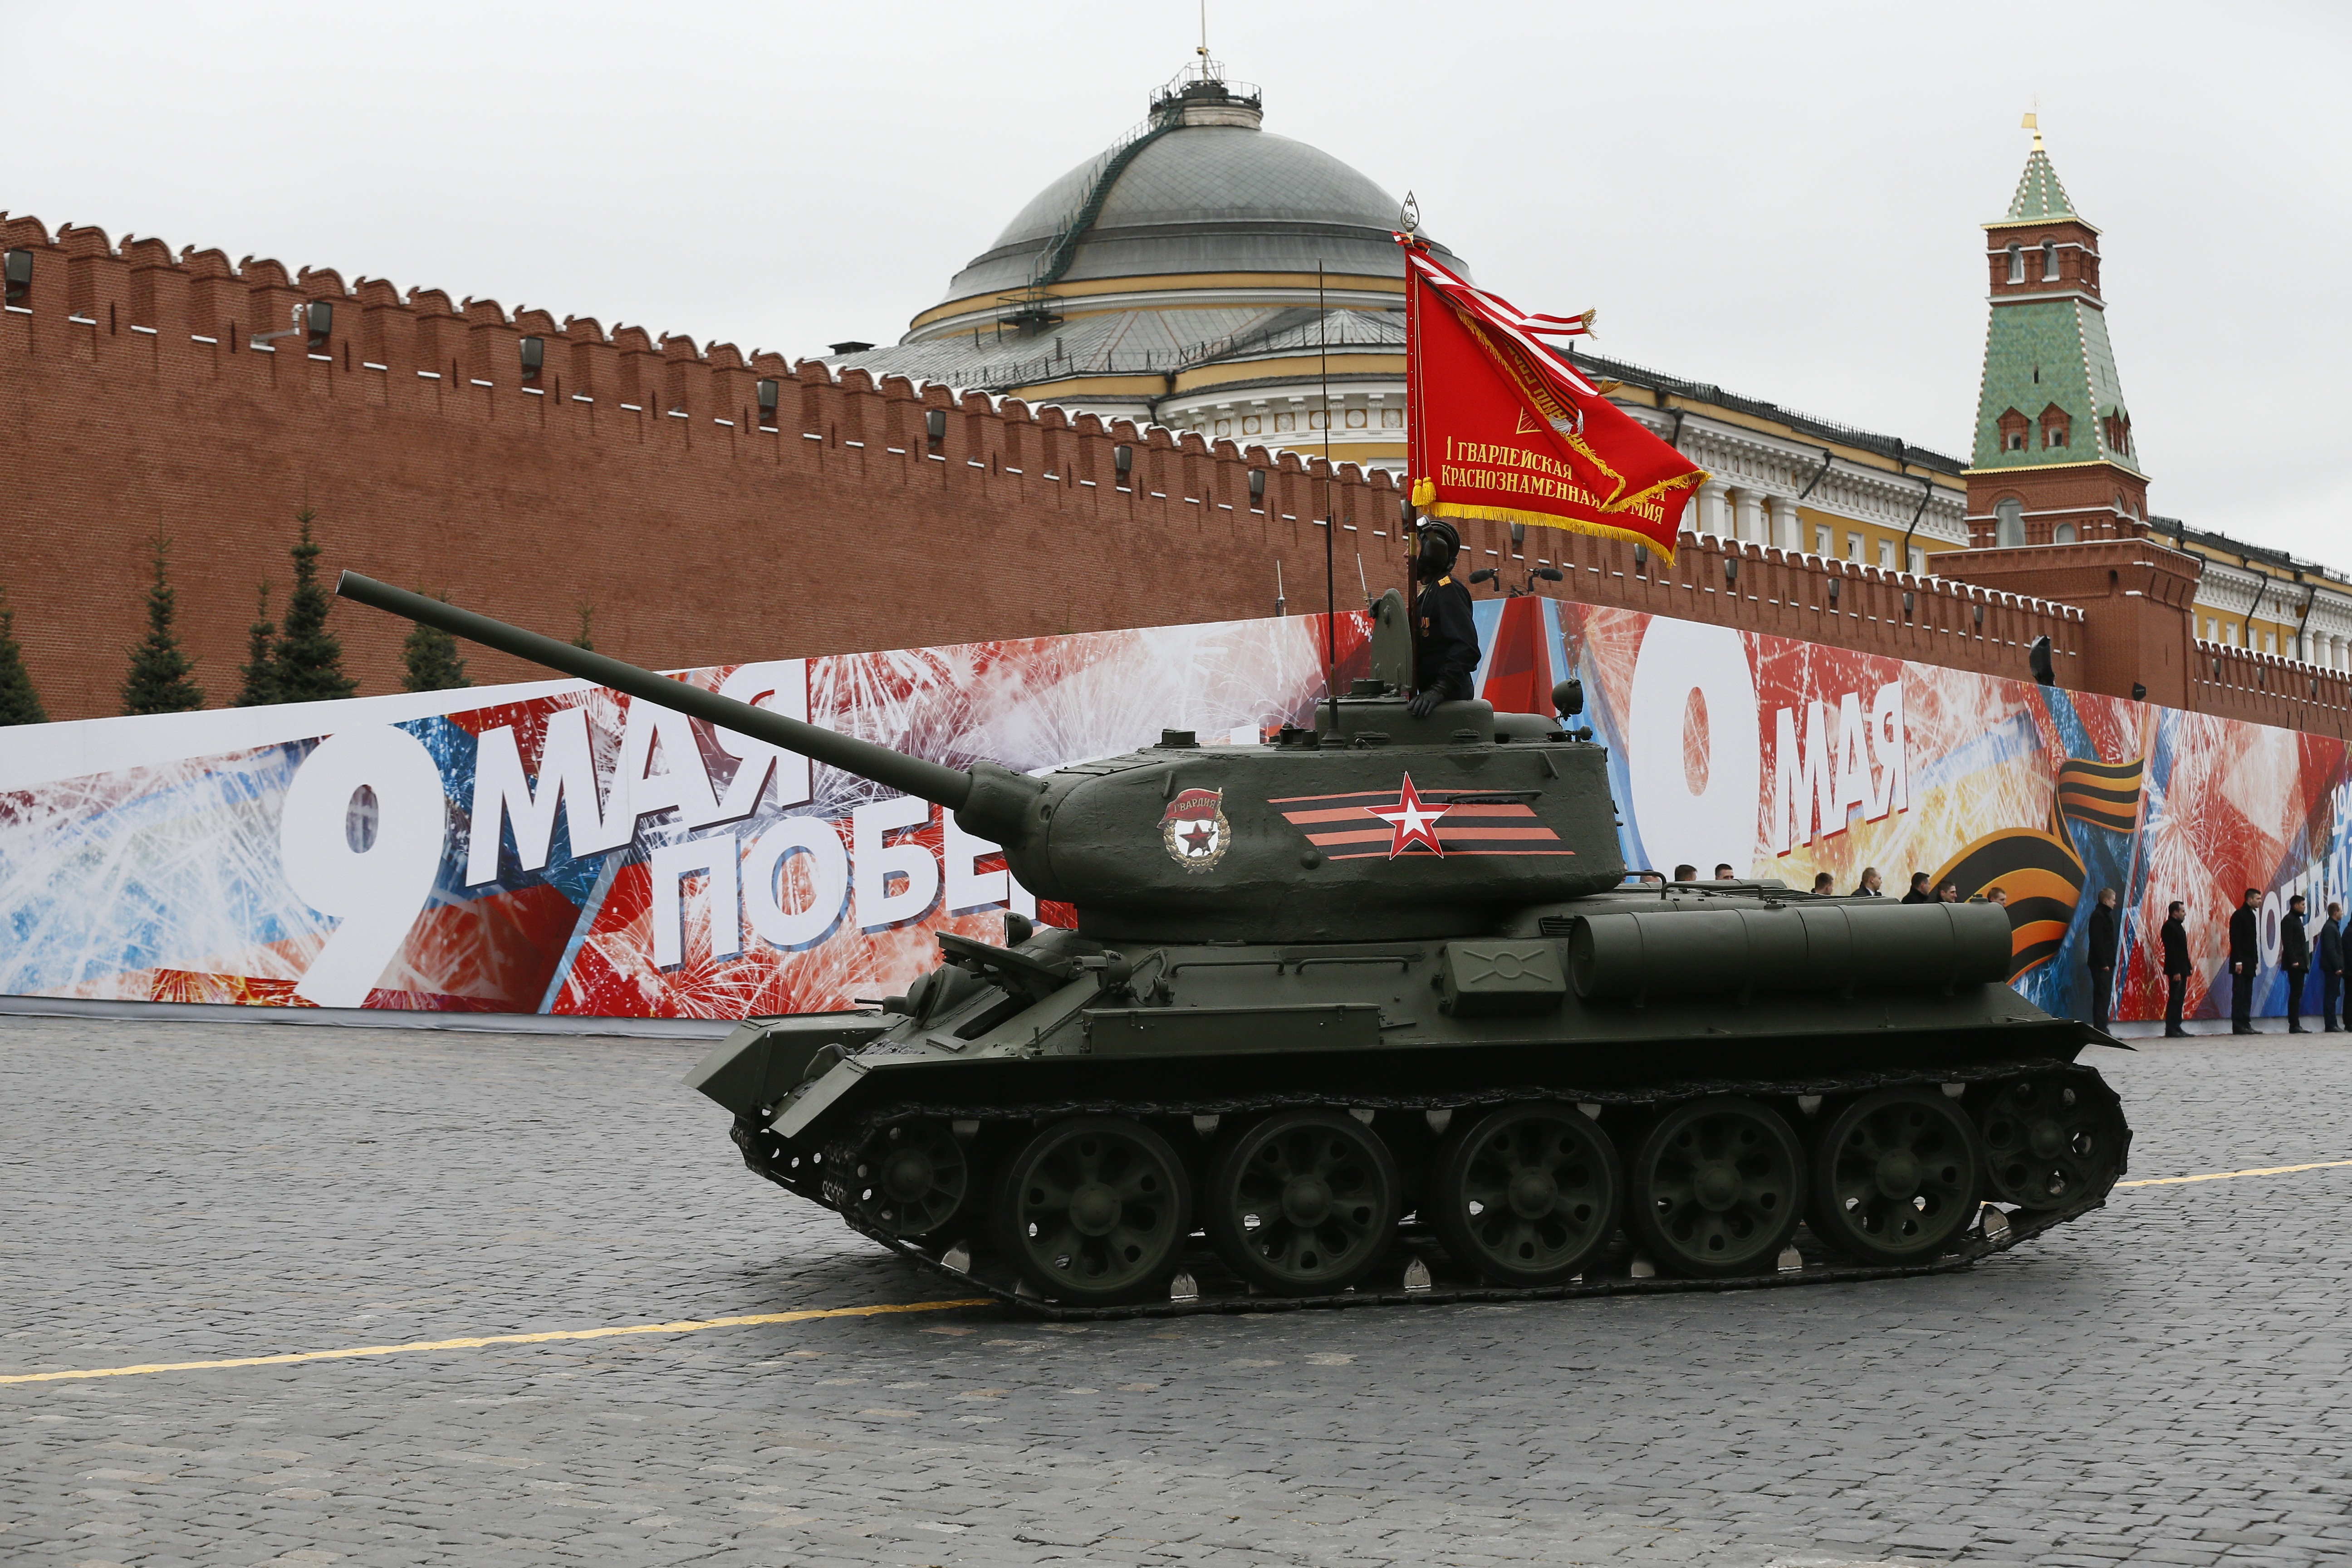 Механизираната част на парада започна с появата на легендарния танк Т-34